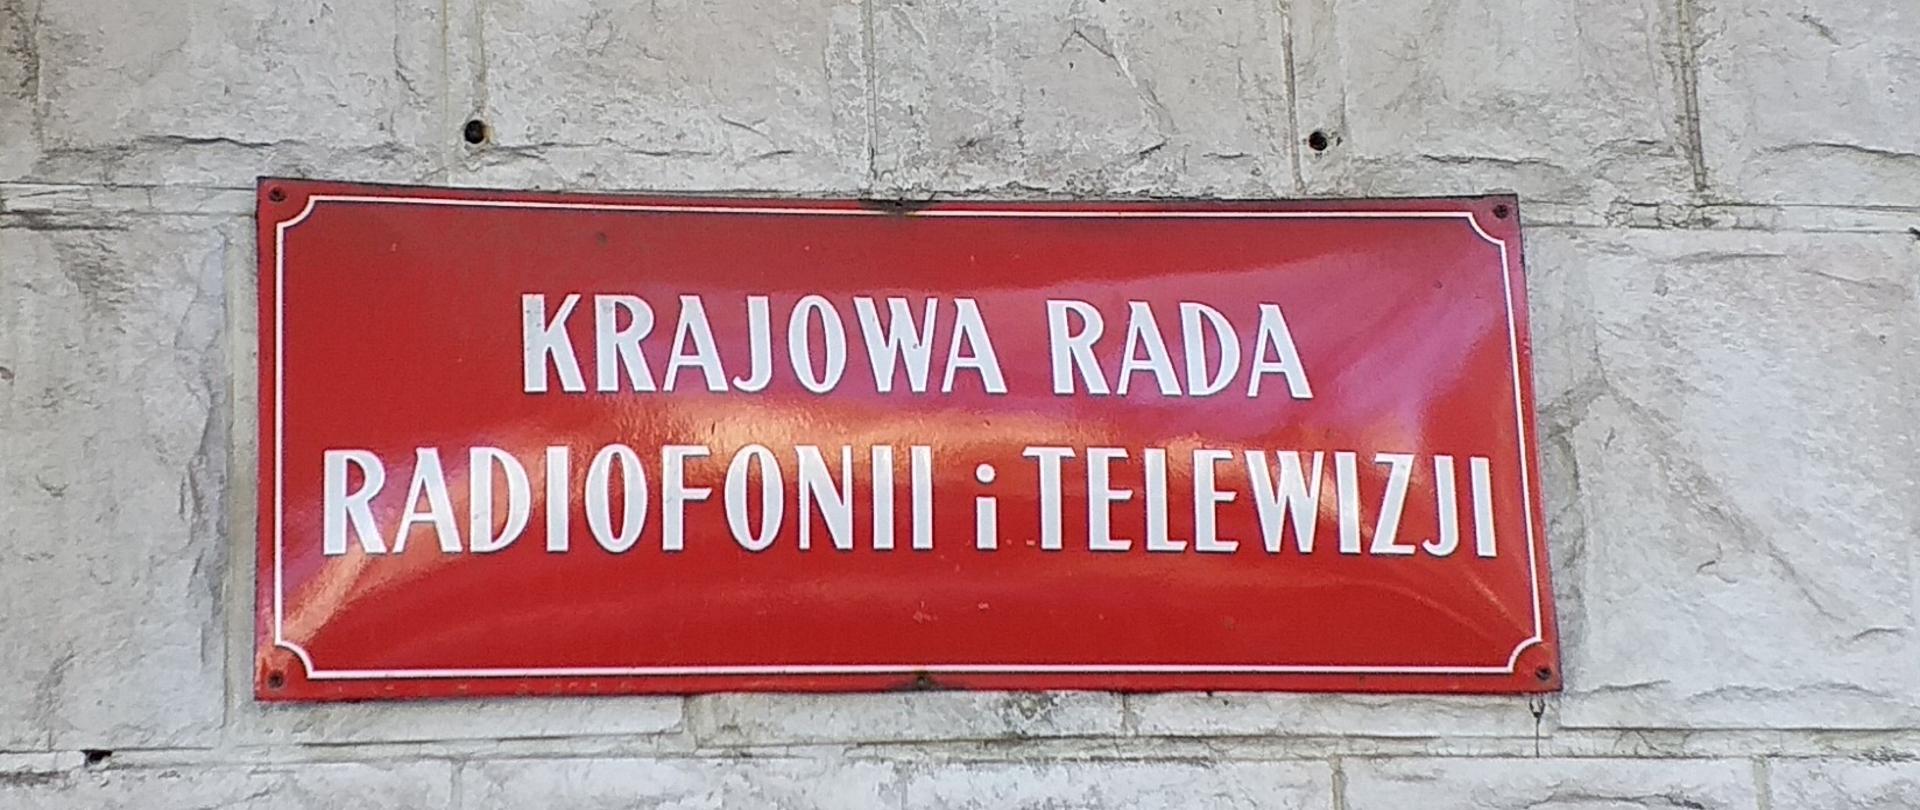 Zdjęcie w poziomie. Podłużna, czerwona tablica z białym napisem "Krajowa Rada Radiofonii i Telewizji"